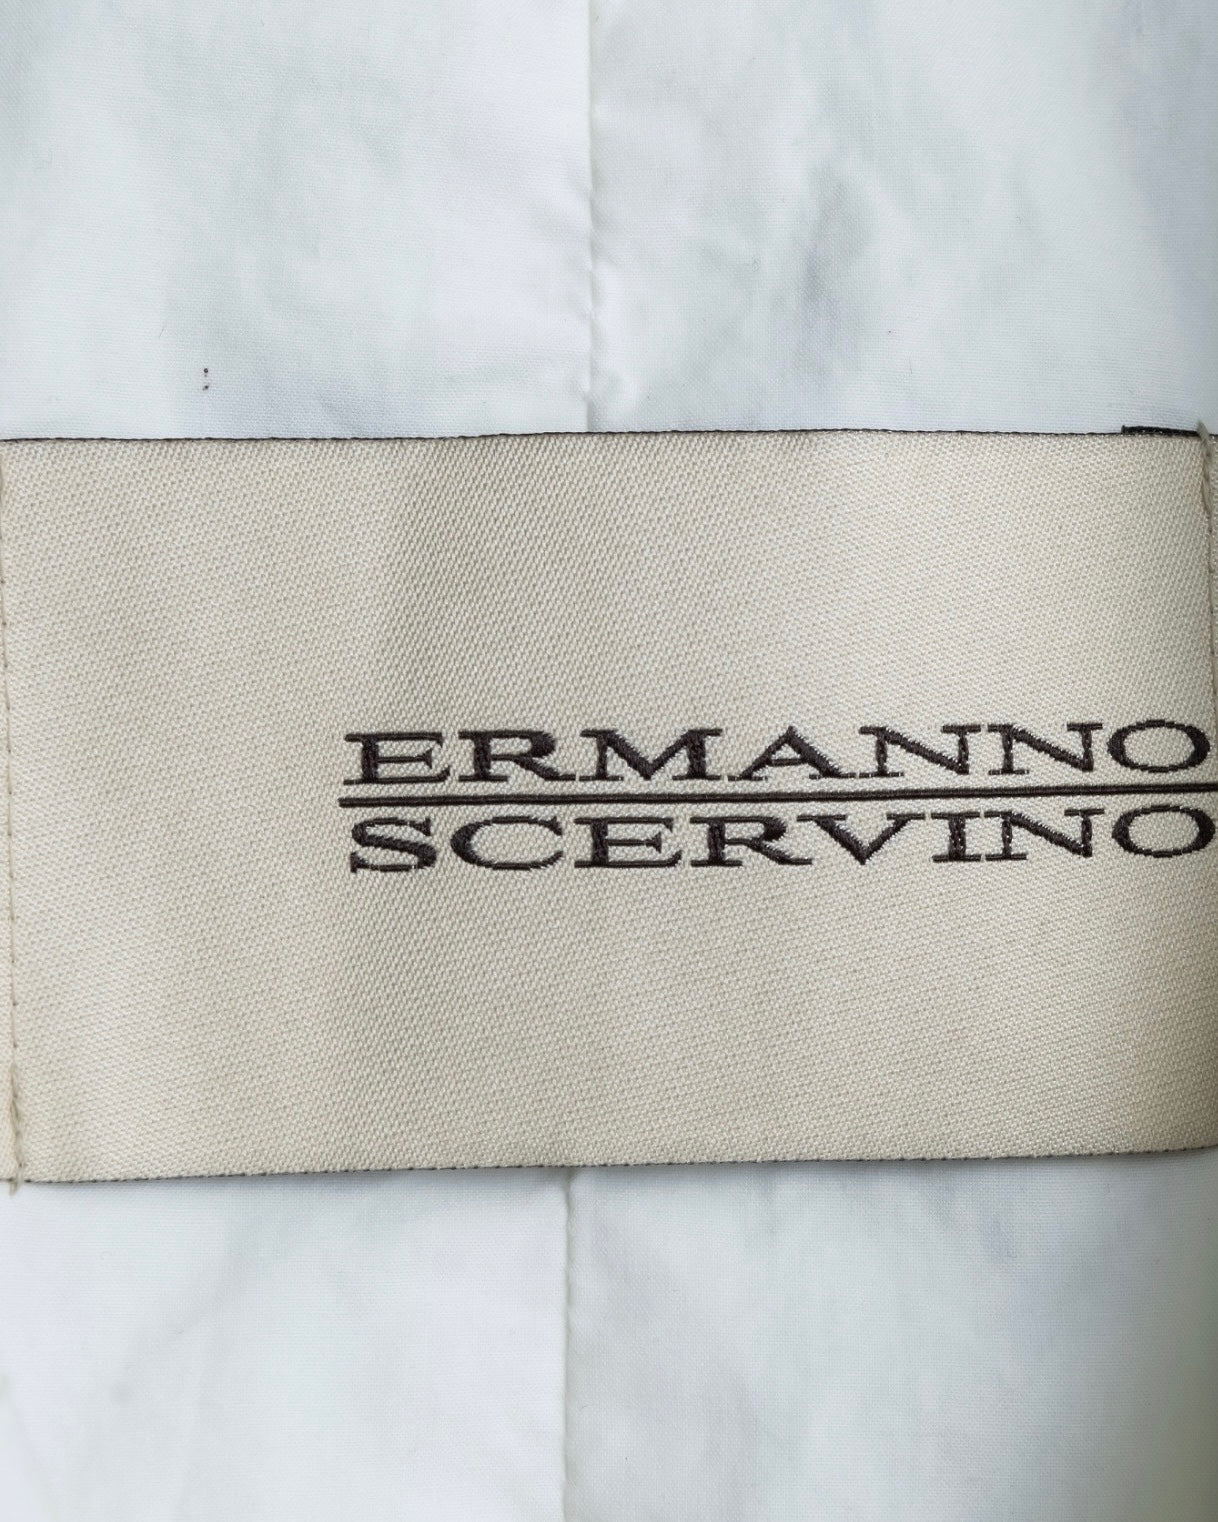 "Ermanno Scervino" Archive Piece